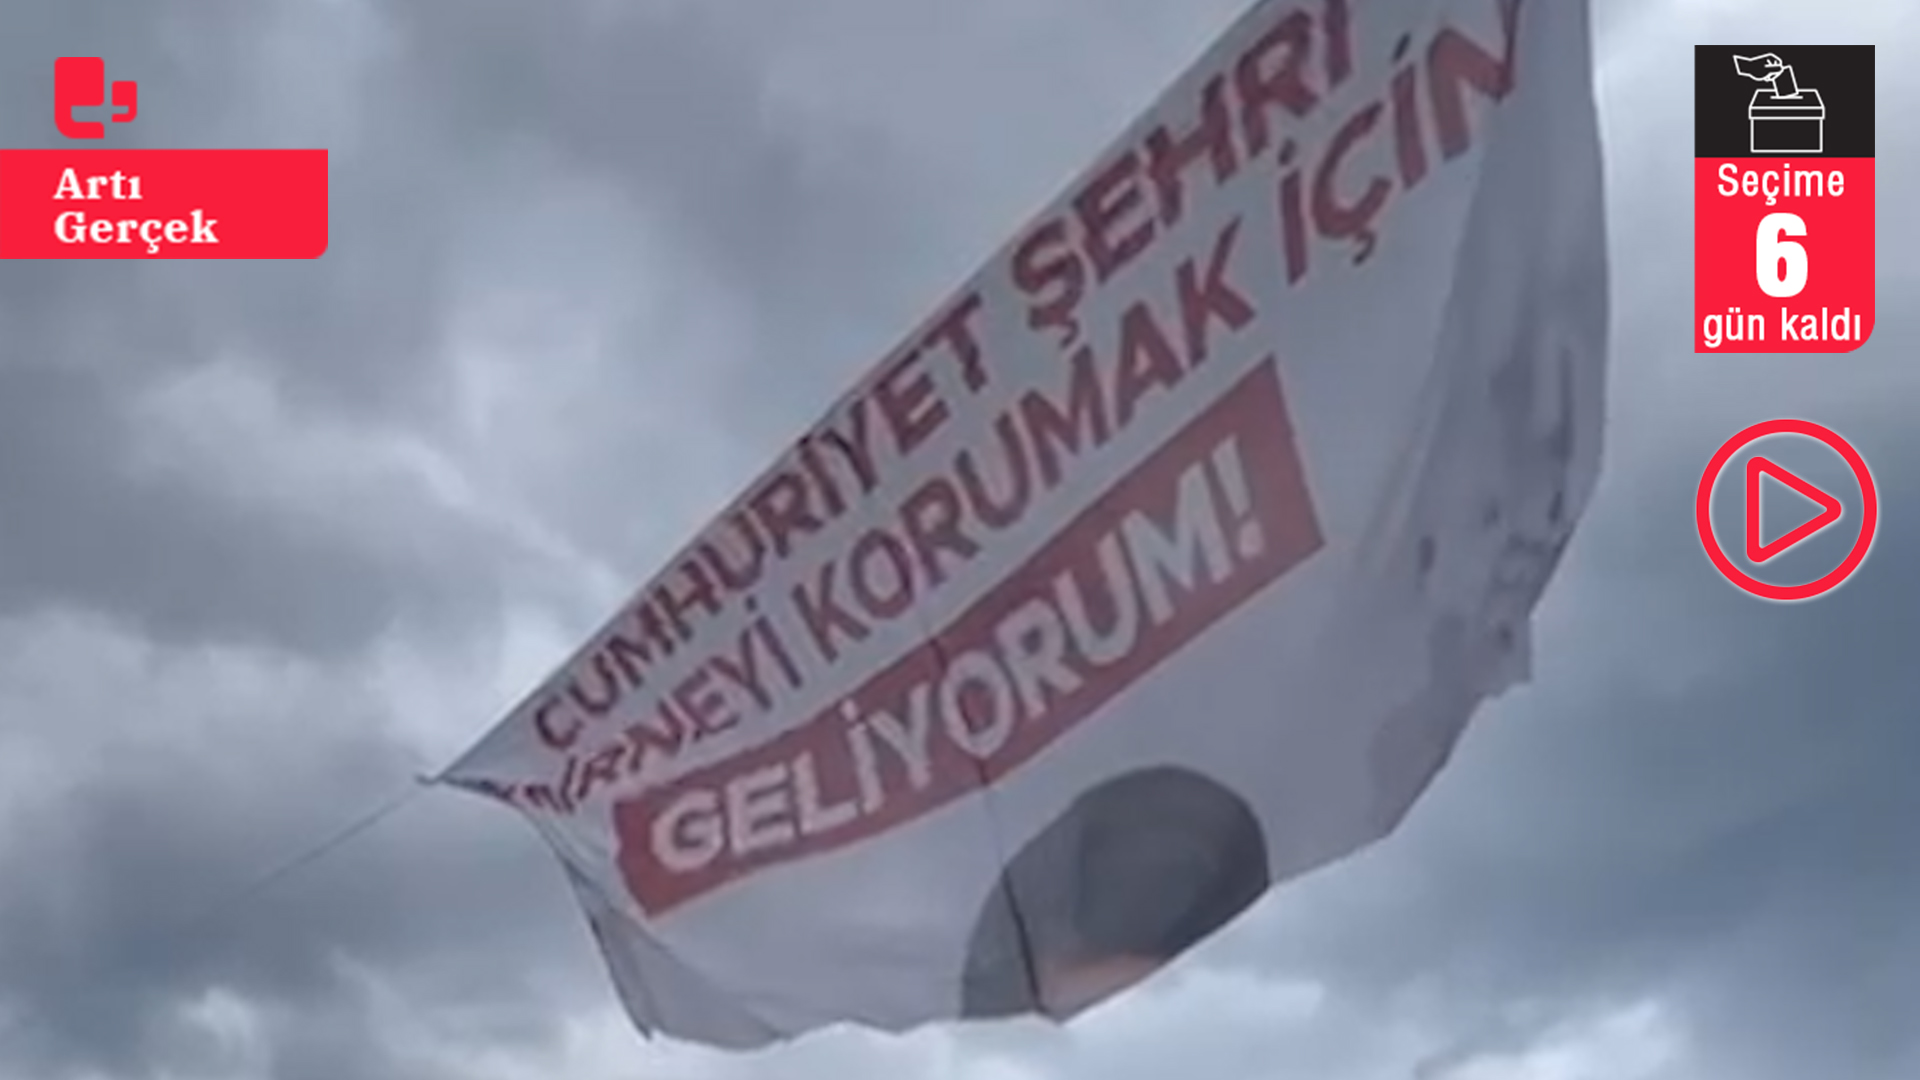 Edirne'de CHP'nin seçim afişlerine saldırı